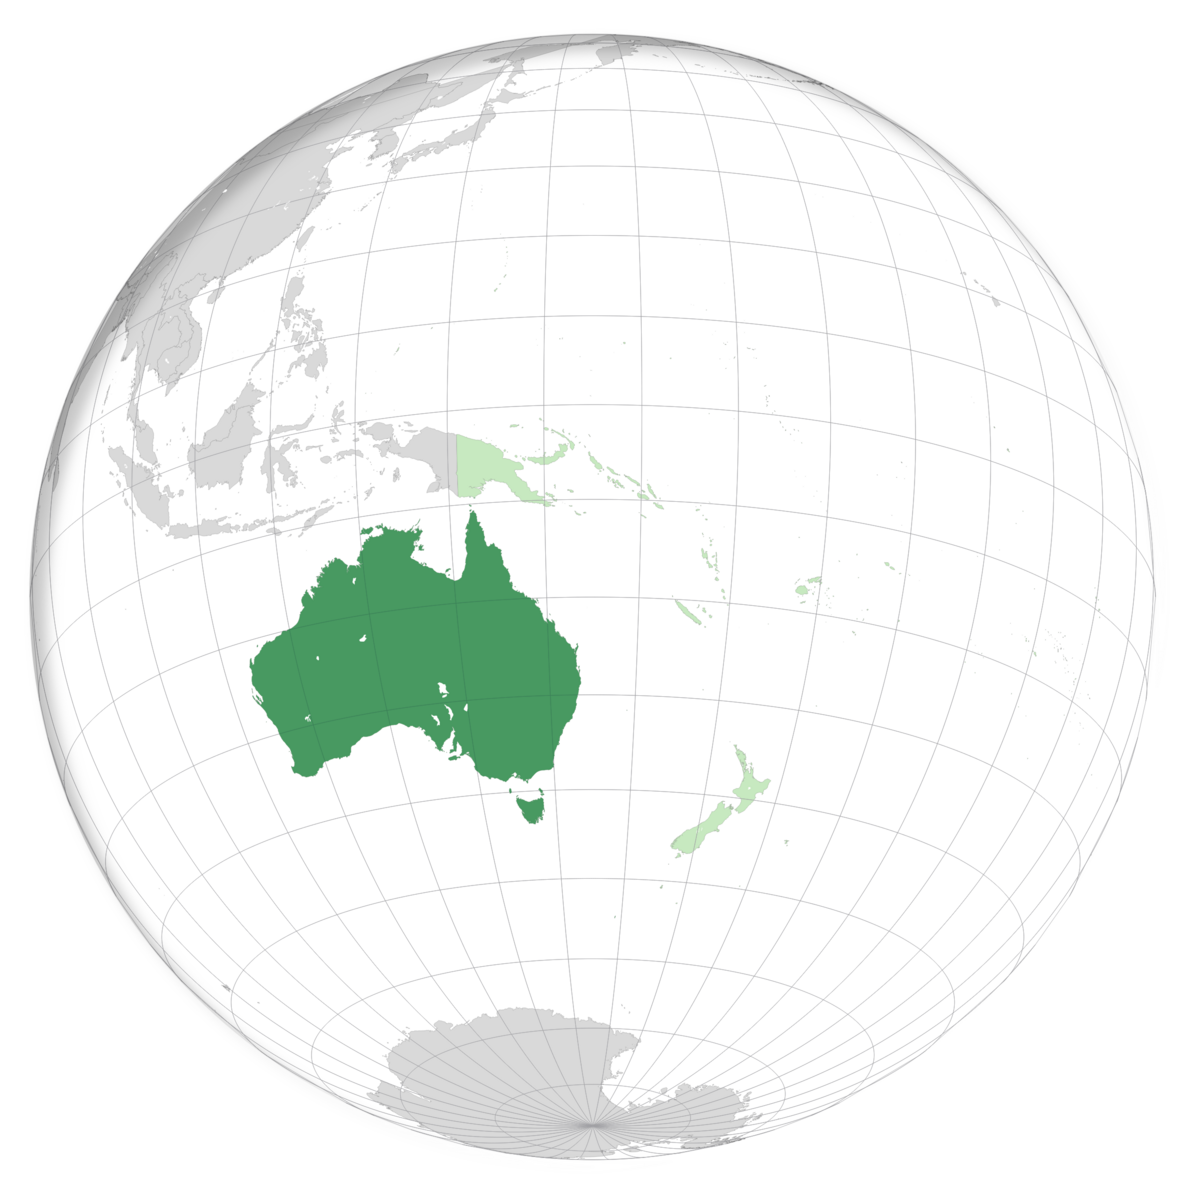 plassering av Australia på jordkloden. Kart